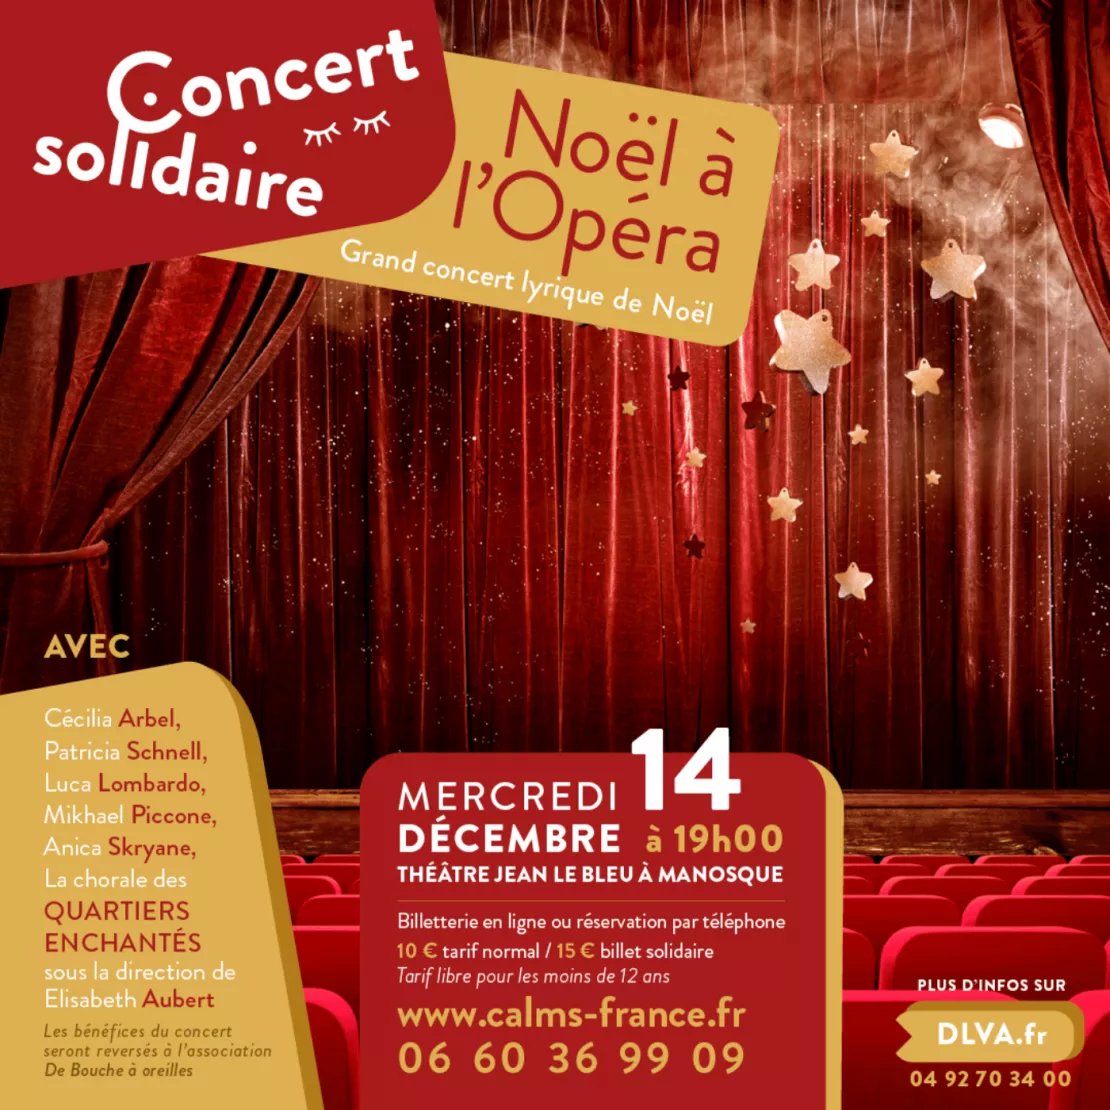 Près de chez vous avec le concert solidaire "Noël à l'opéra" à Manosque